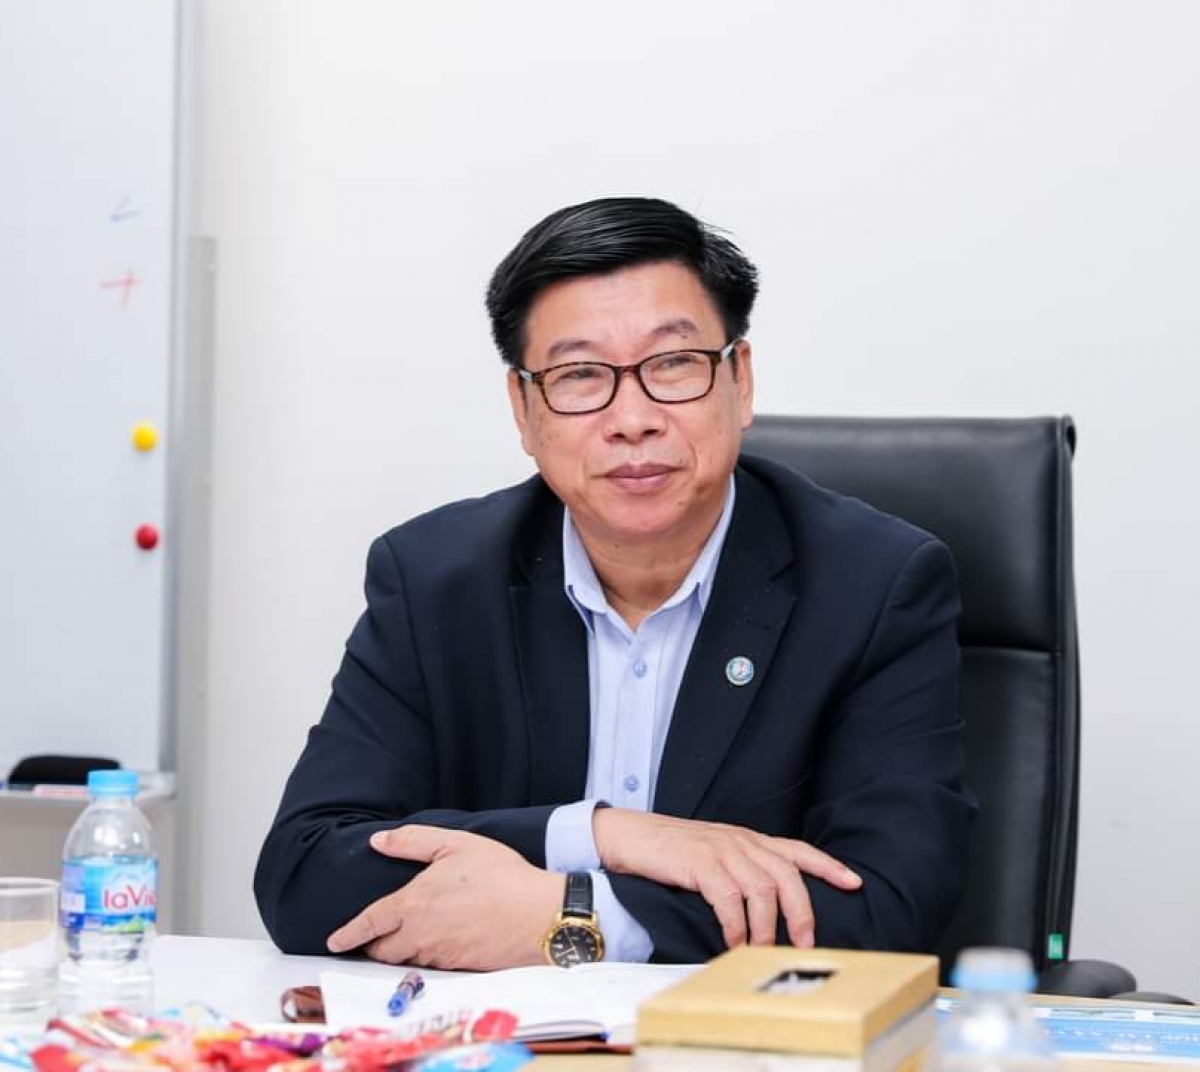 ông Lê Quang Trung, nguyên Phó cục trưởng phụ trách Cục Việc làm